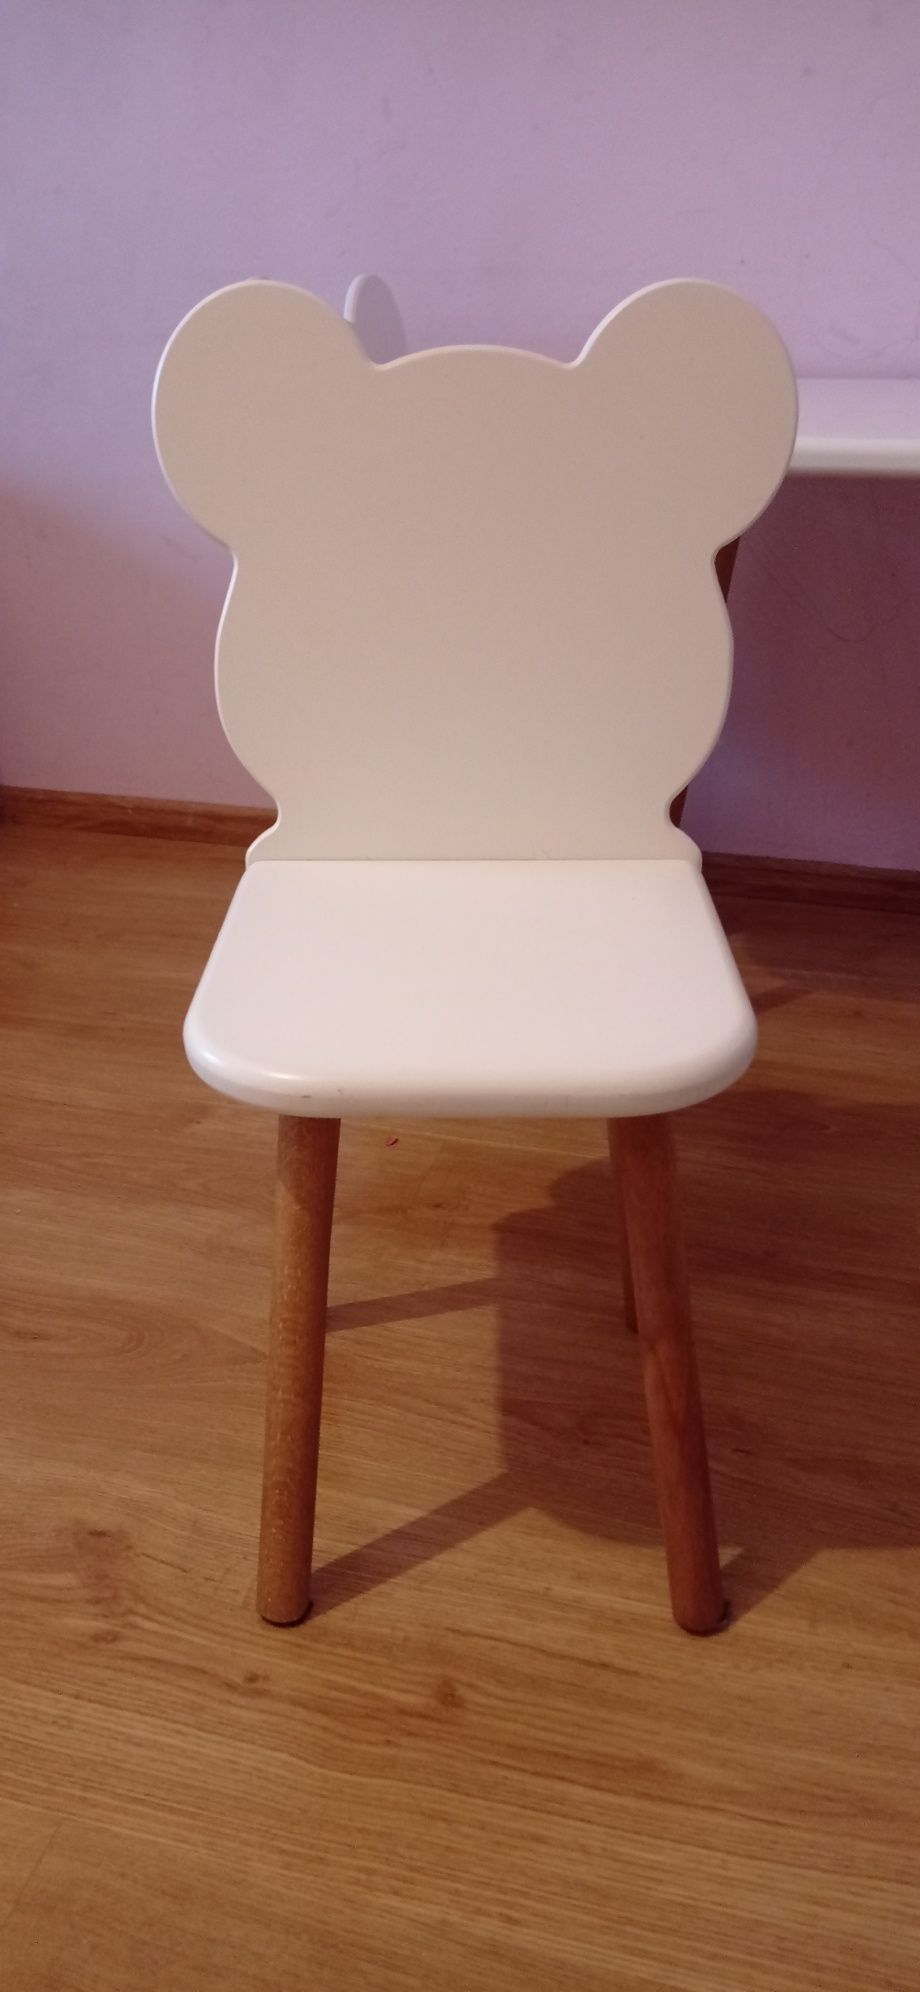 Oh Babe stolik + krzesła białe miś misiu